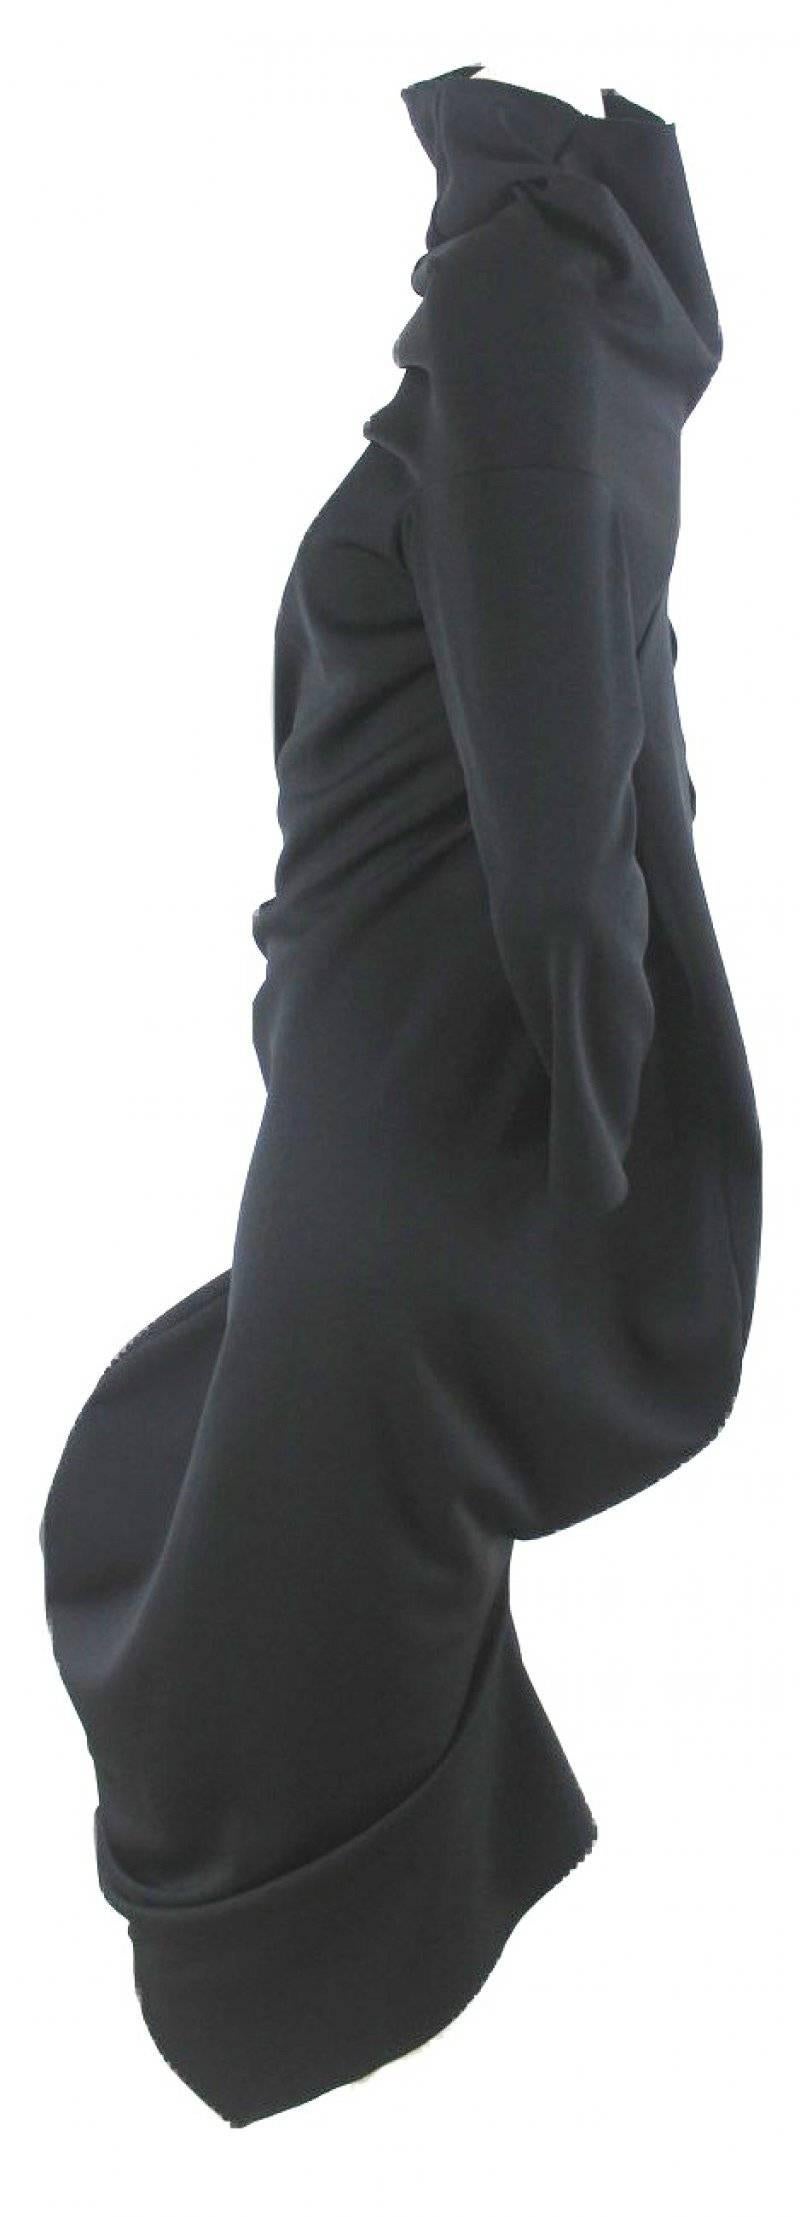 Comme des Garcons 2011 Collection S-Curve Dress 3